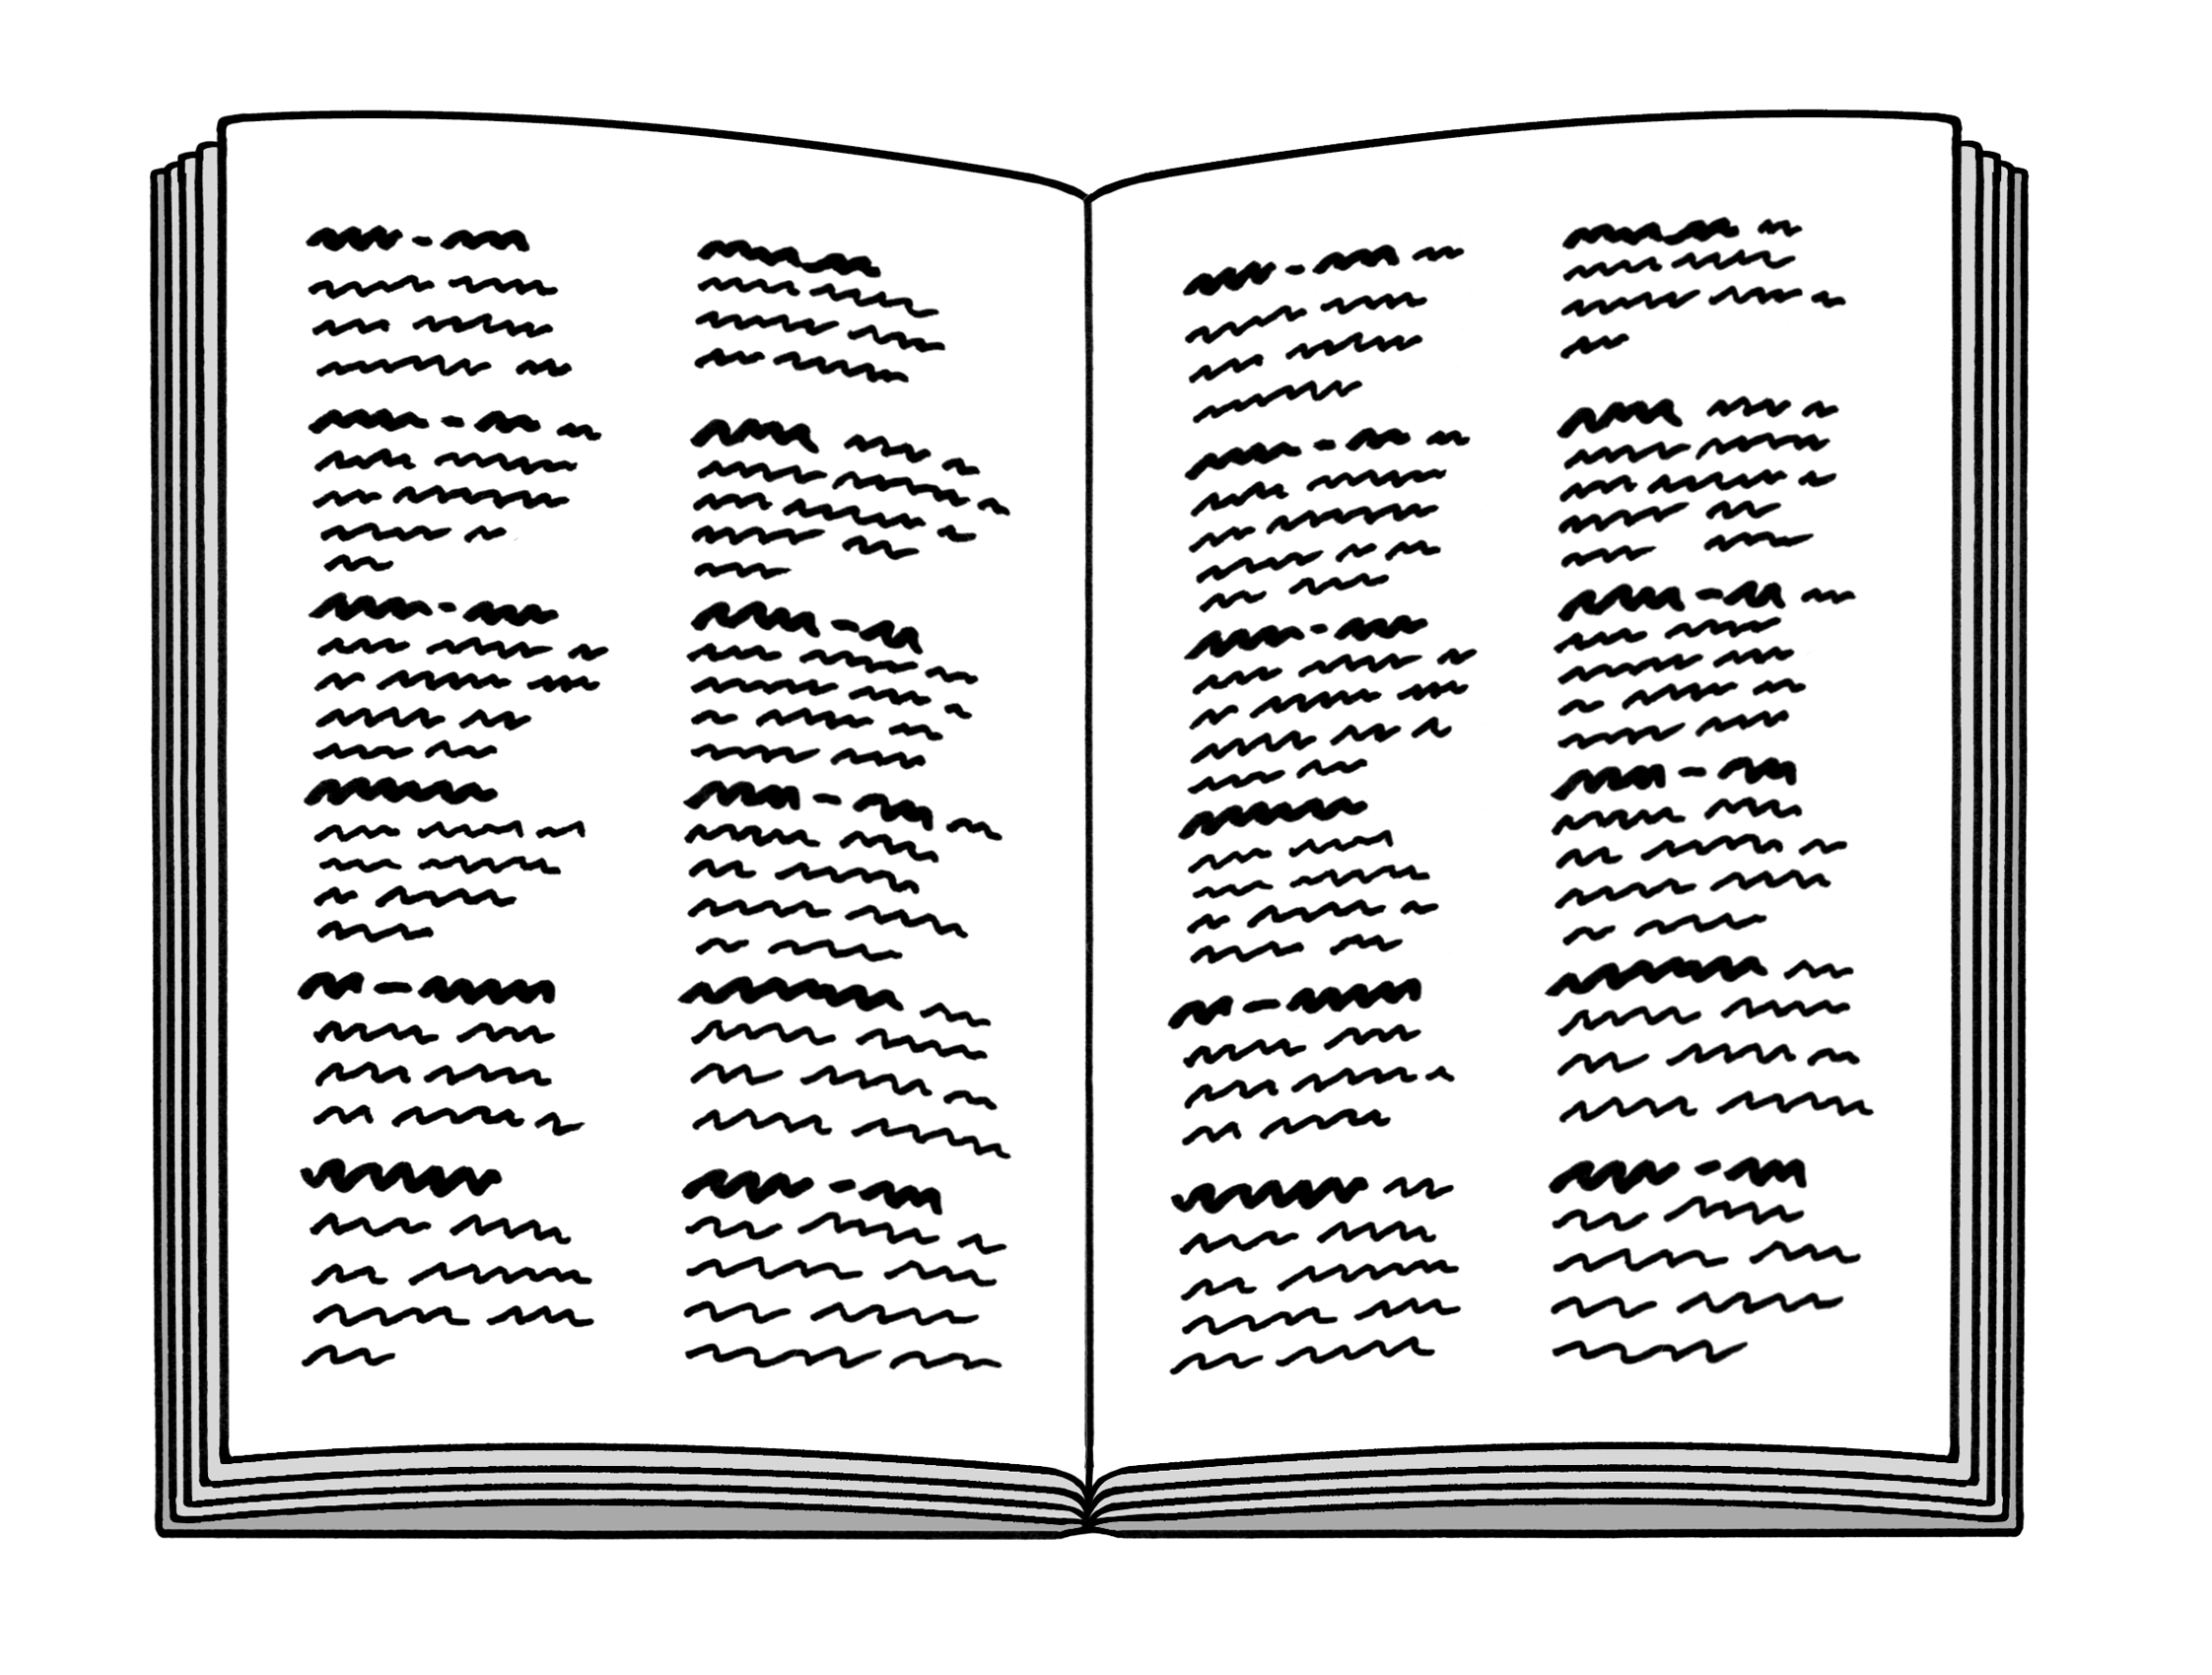 Leichte Sprache Bild: ein aufgeschlagenes Wörterbuch